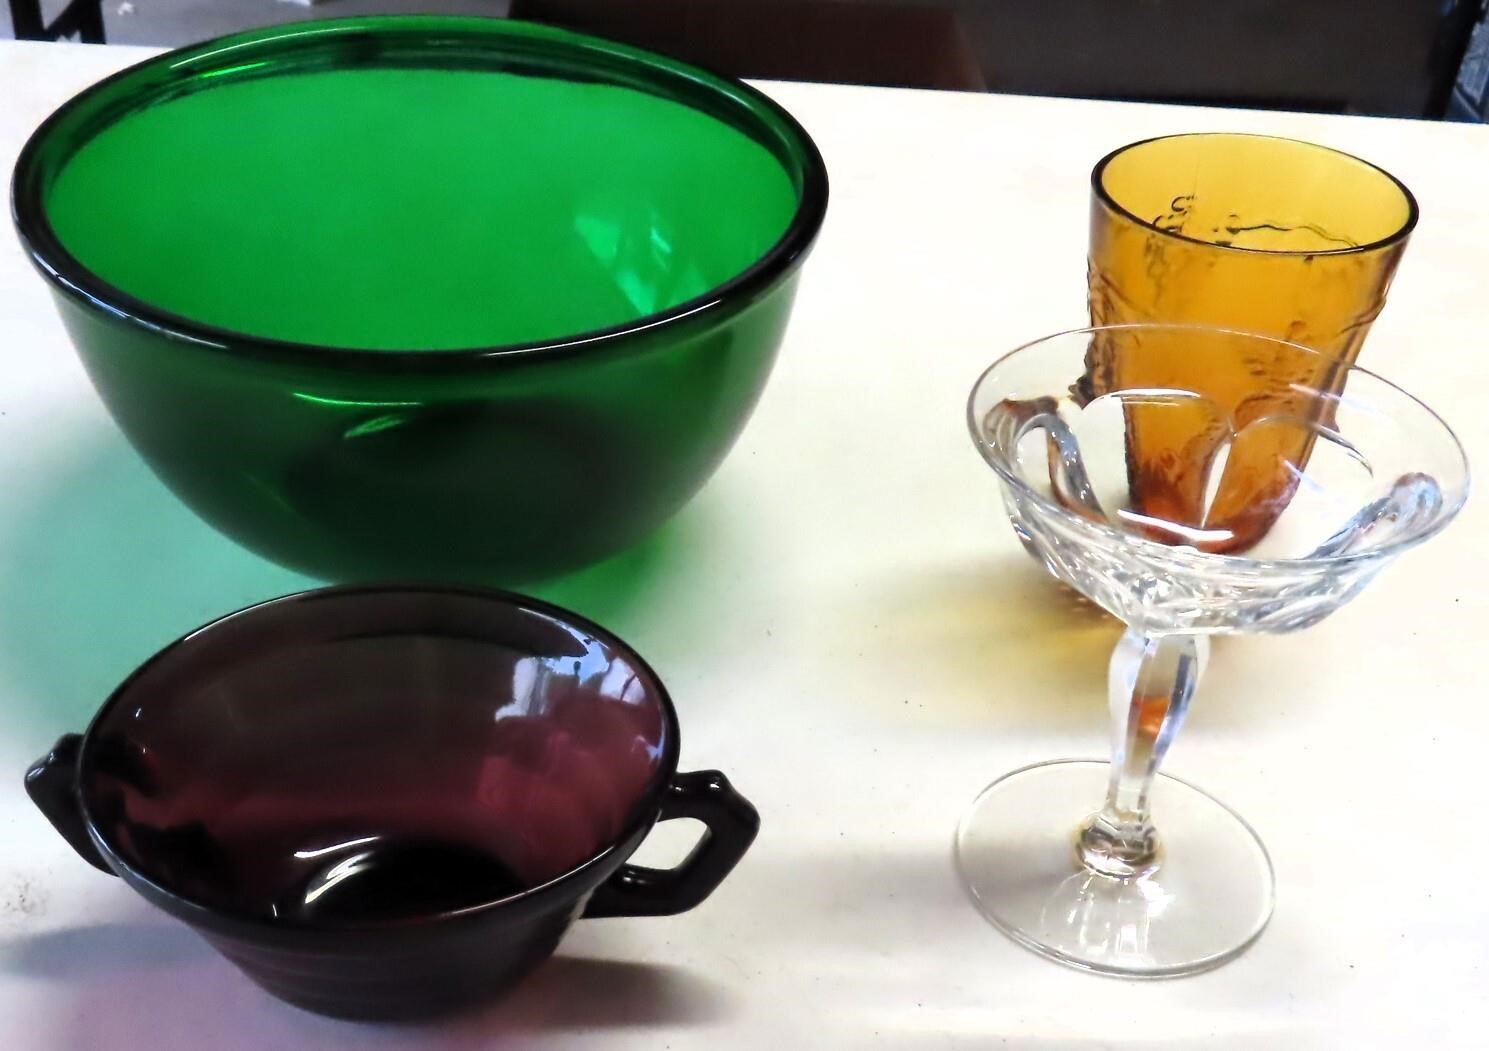 8" Emerald Green Bowl, Heisey Glass, Amethyst,